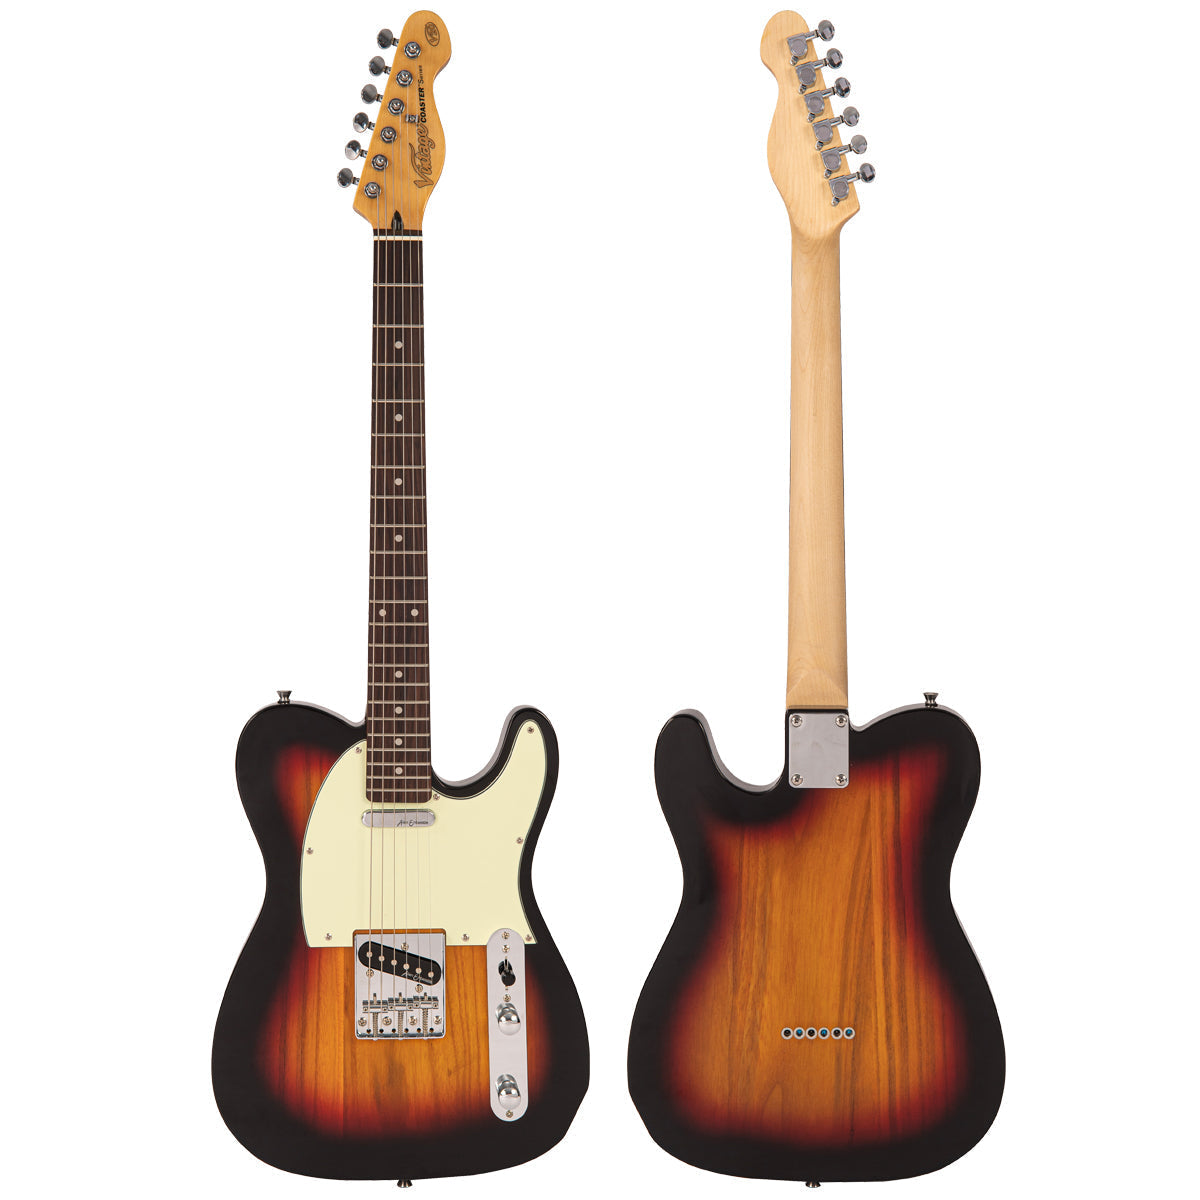 Vintage V20 Coaster Series Electric Guitar ~ 3 Tone Sunburst, Electric Guitar for sale at Richards Guitars.